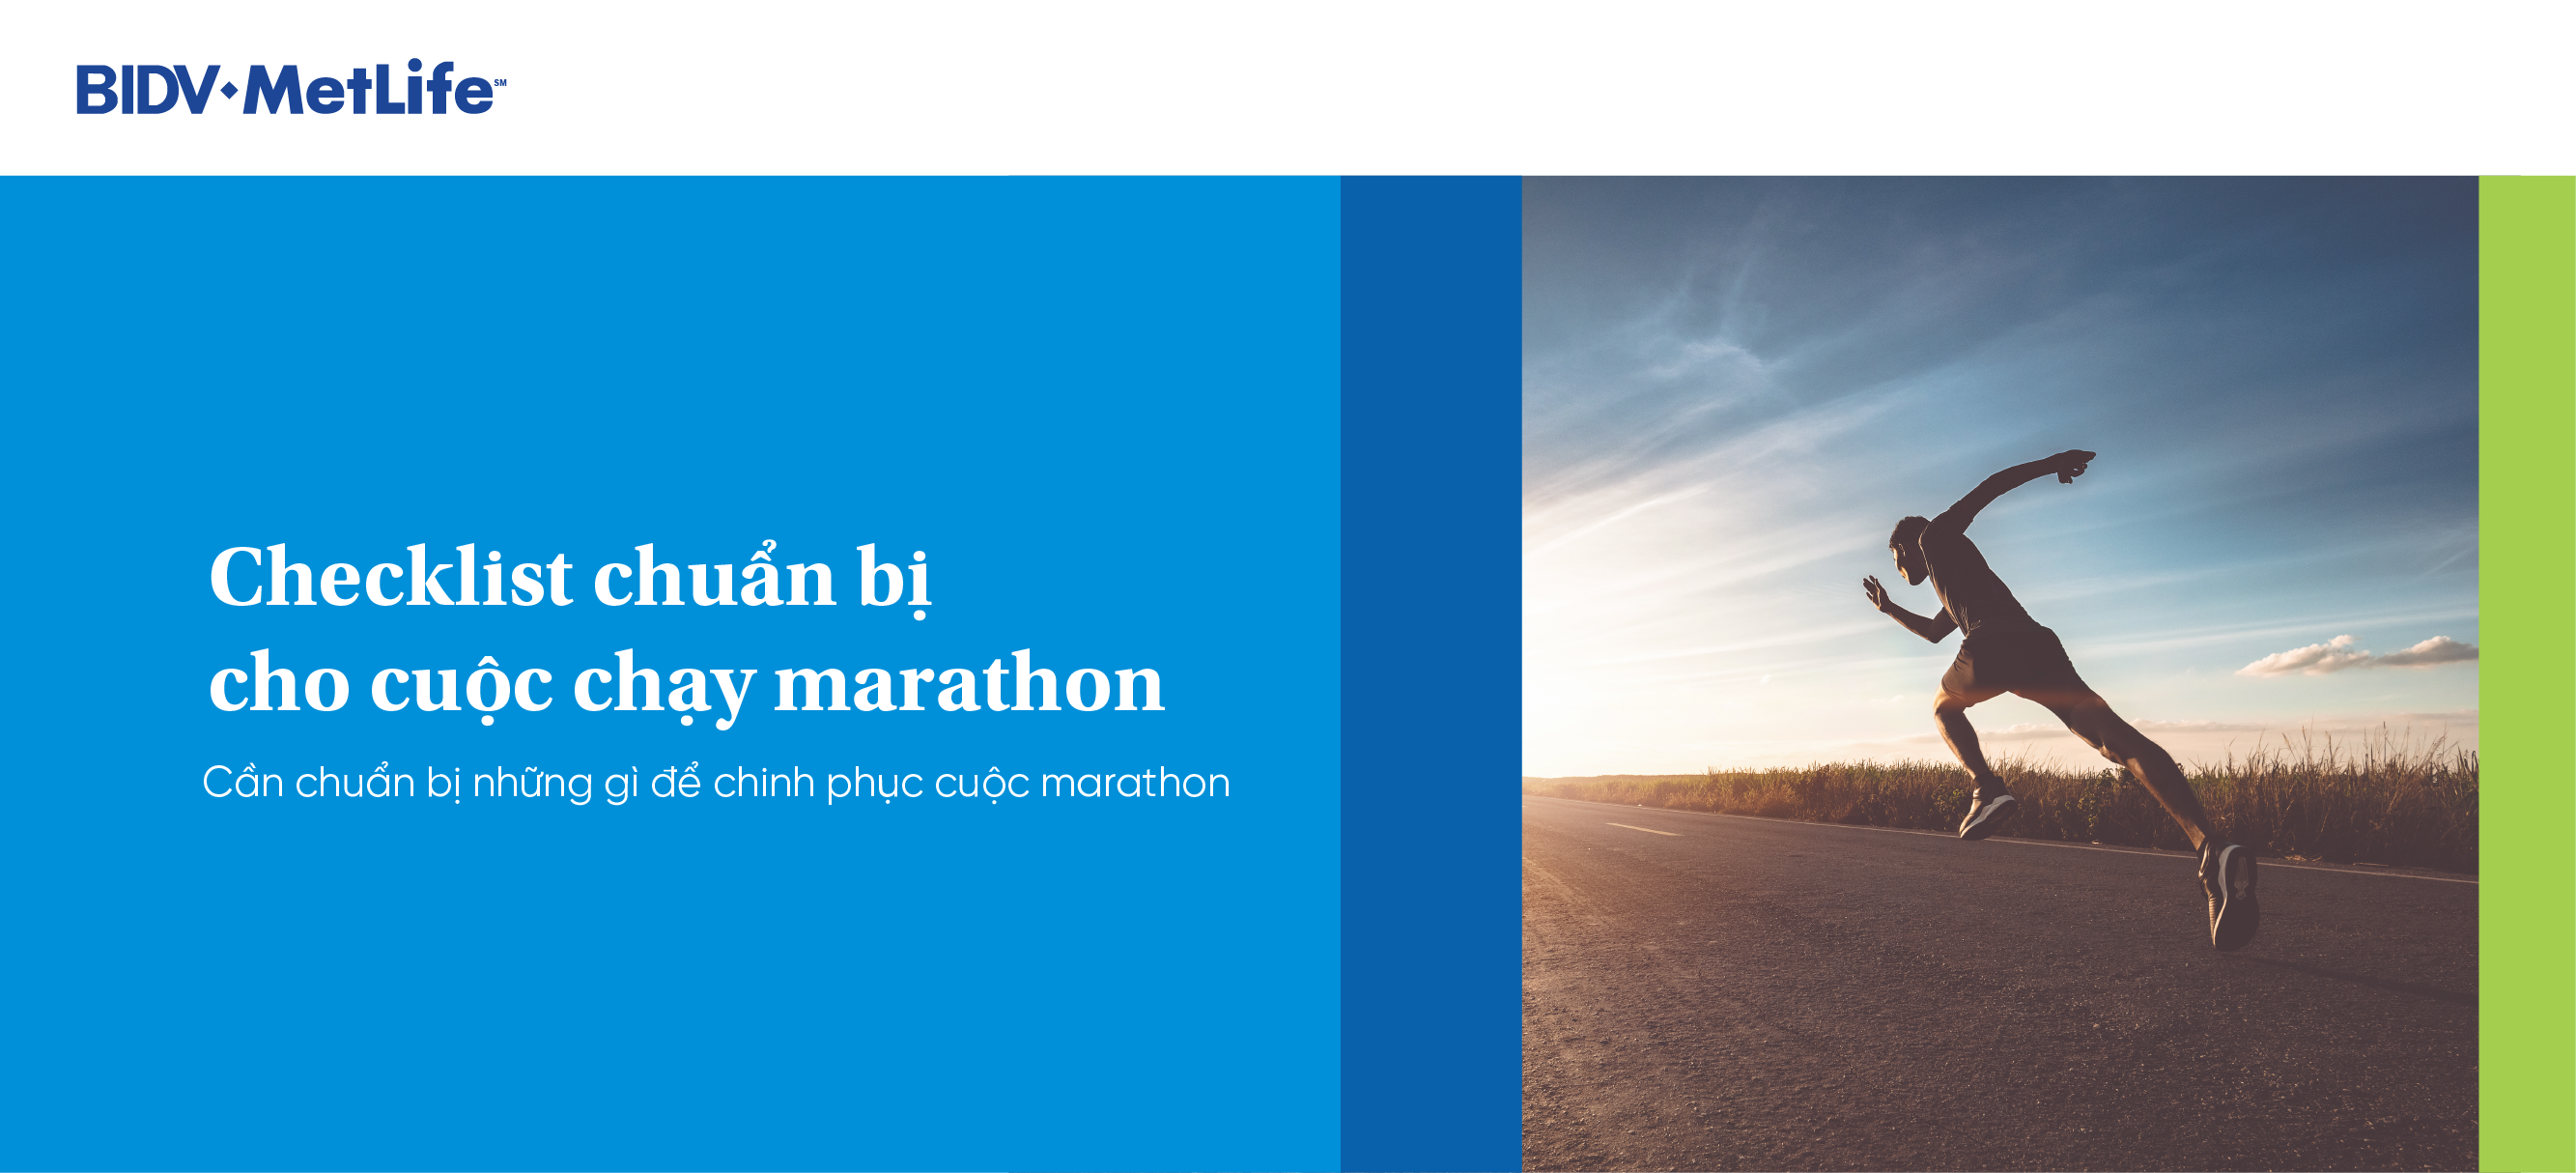 Checklist bạn nên có để chuẩn bị cho đường chạy marathon 40km.